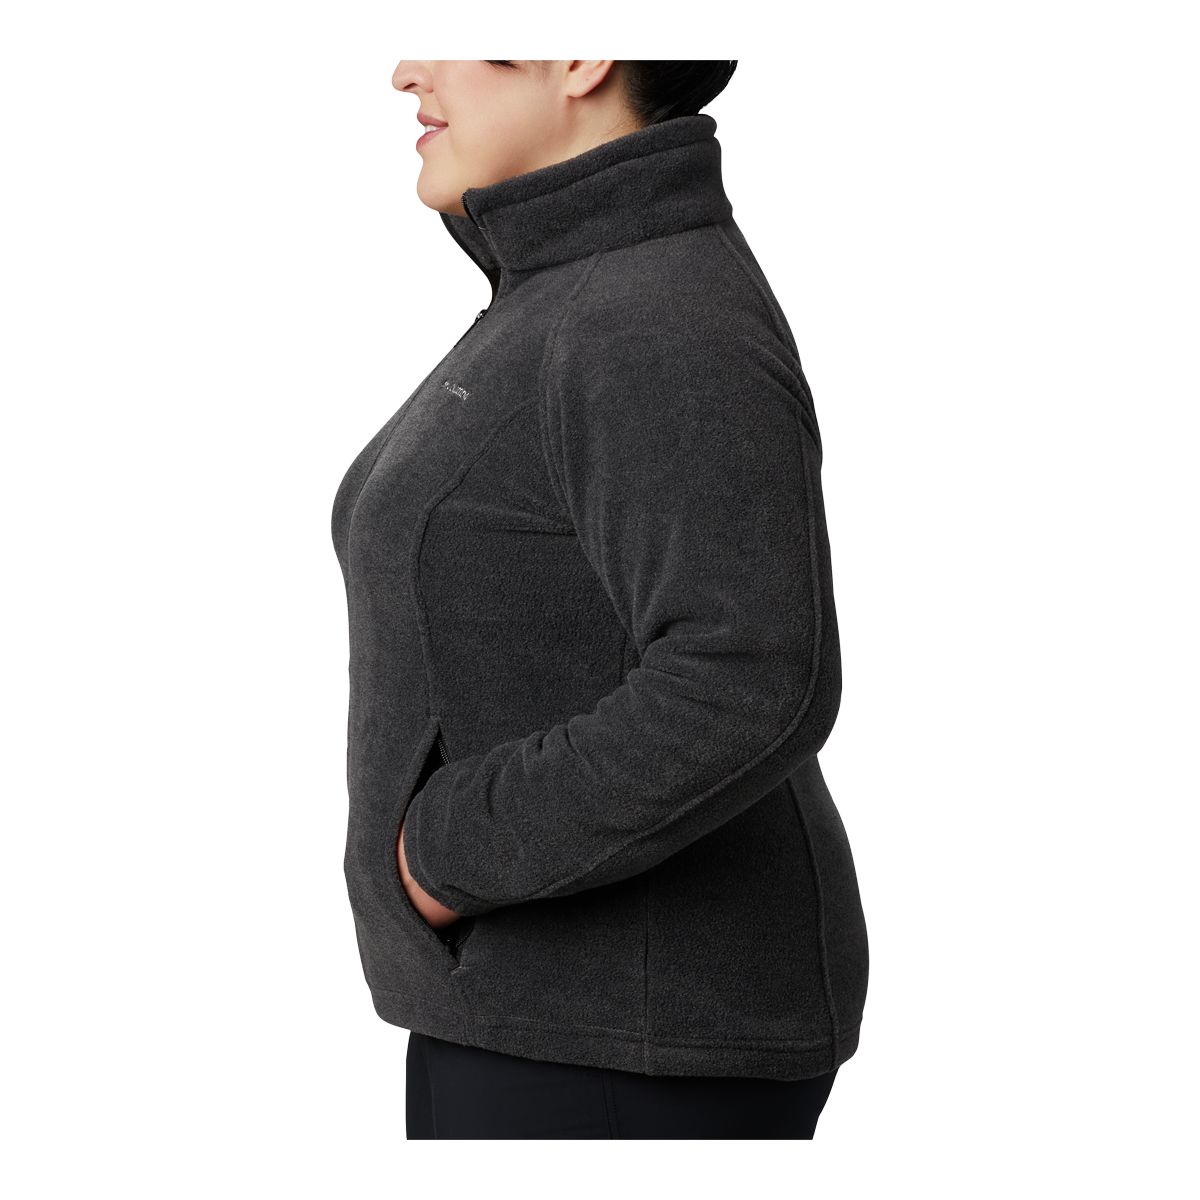 Columbia Youth Boy Girl Charcoal Gray Full Zip Fleece Jacket Size Ss 8